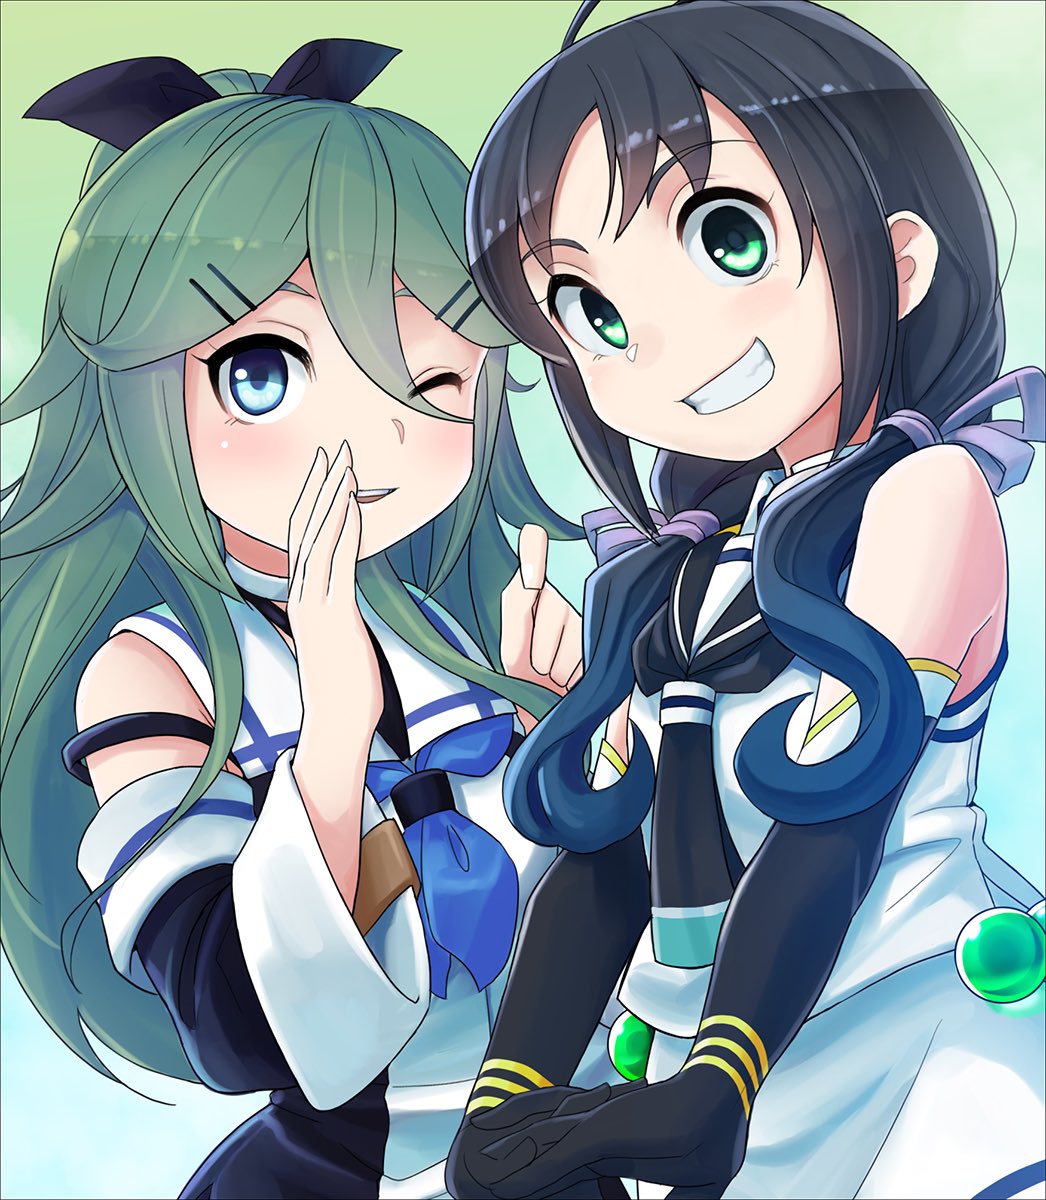 suzukaze (kancolle) ,yamakaze (kancolle) multiple girls 2girls long hair serafuku green eyes one eye closed school uniform  illustration images